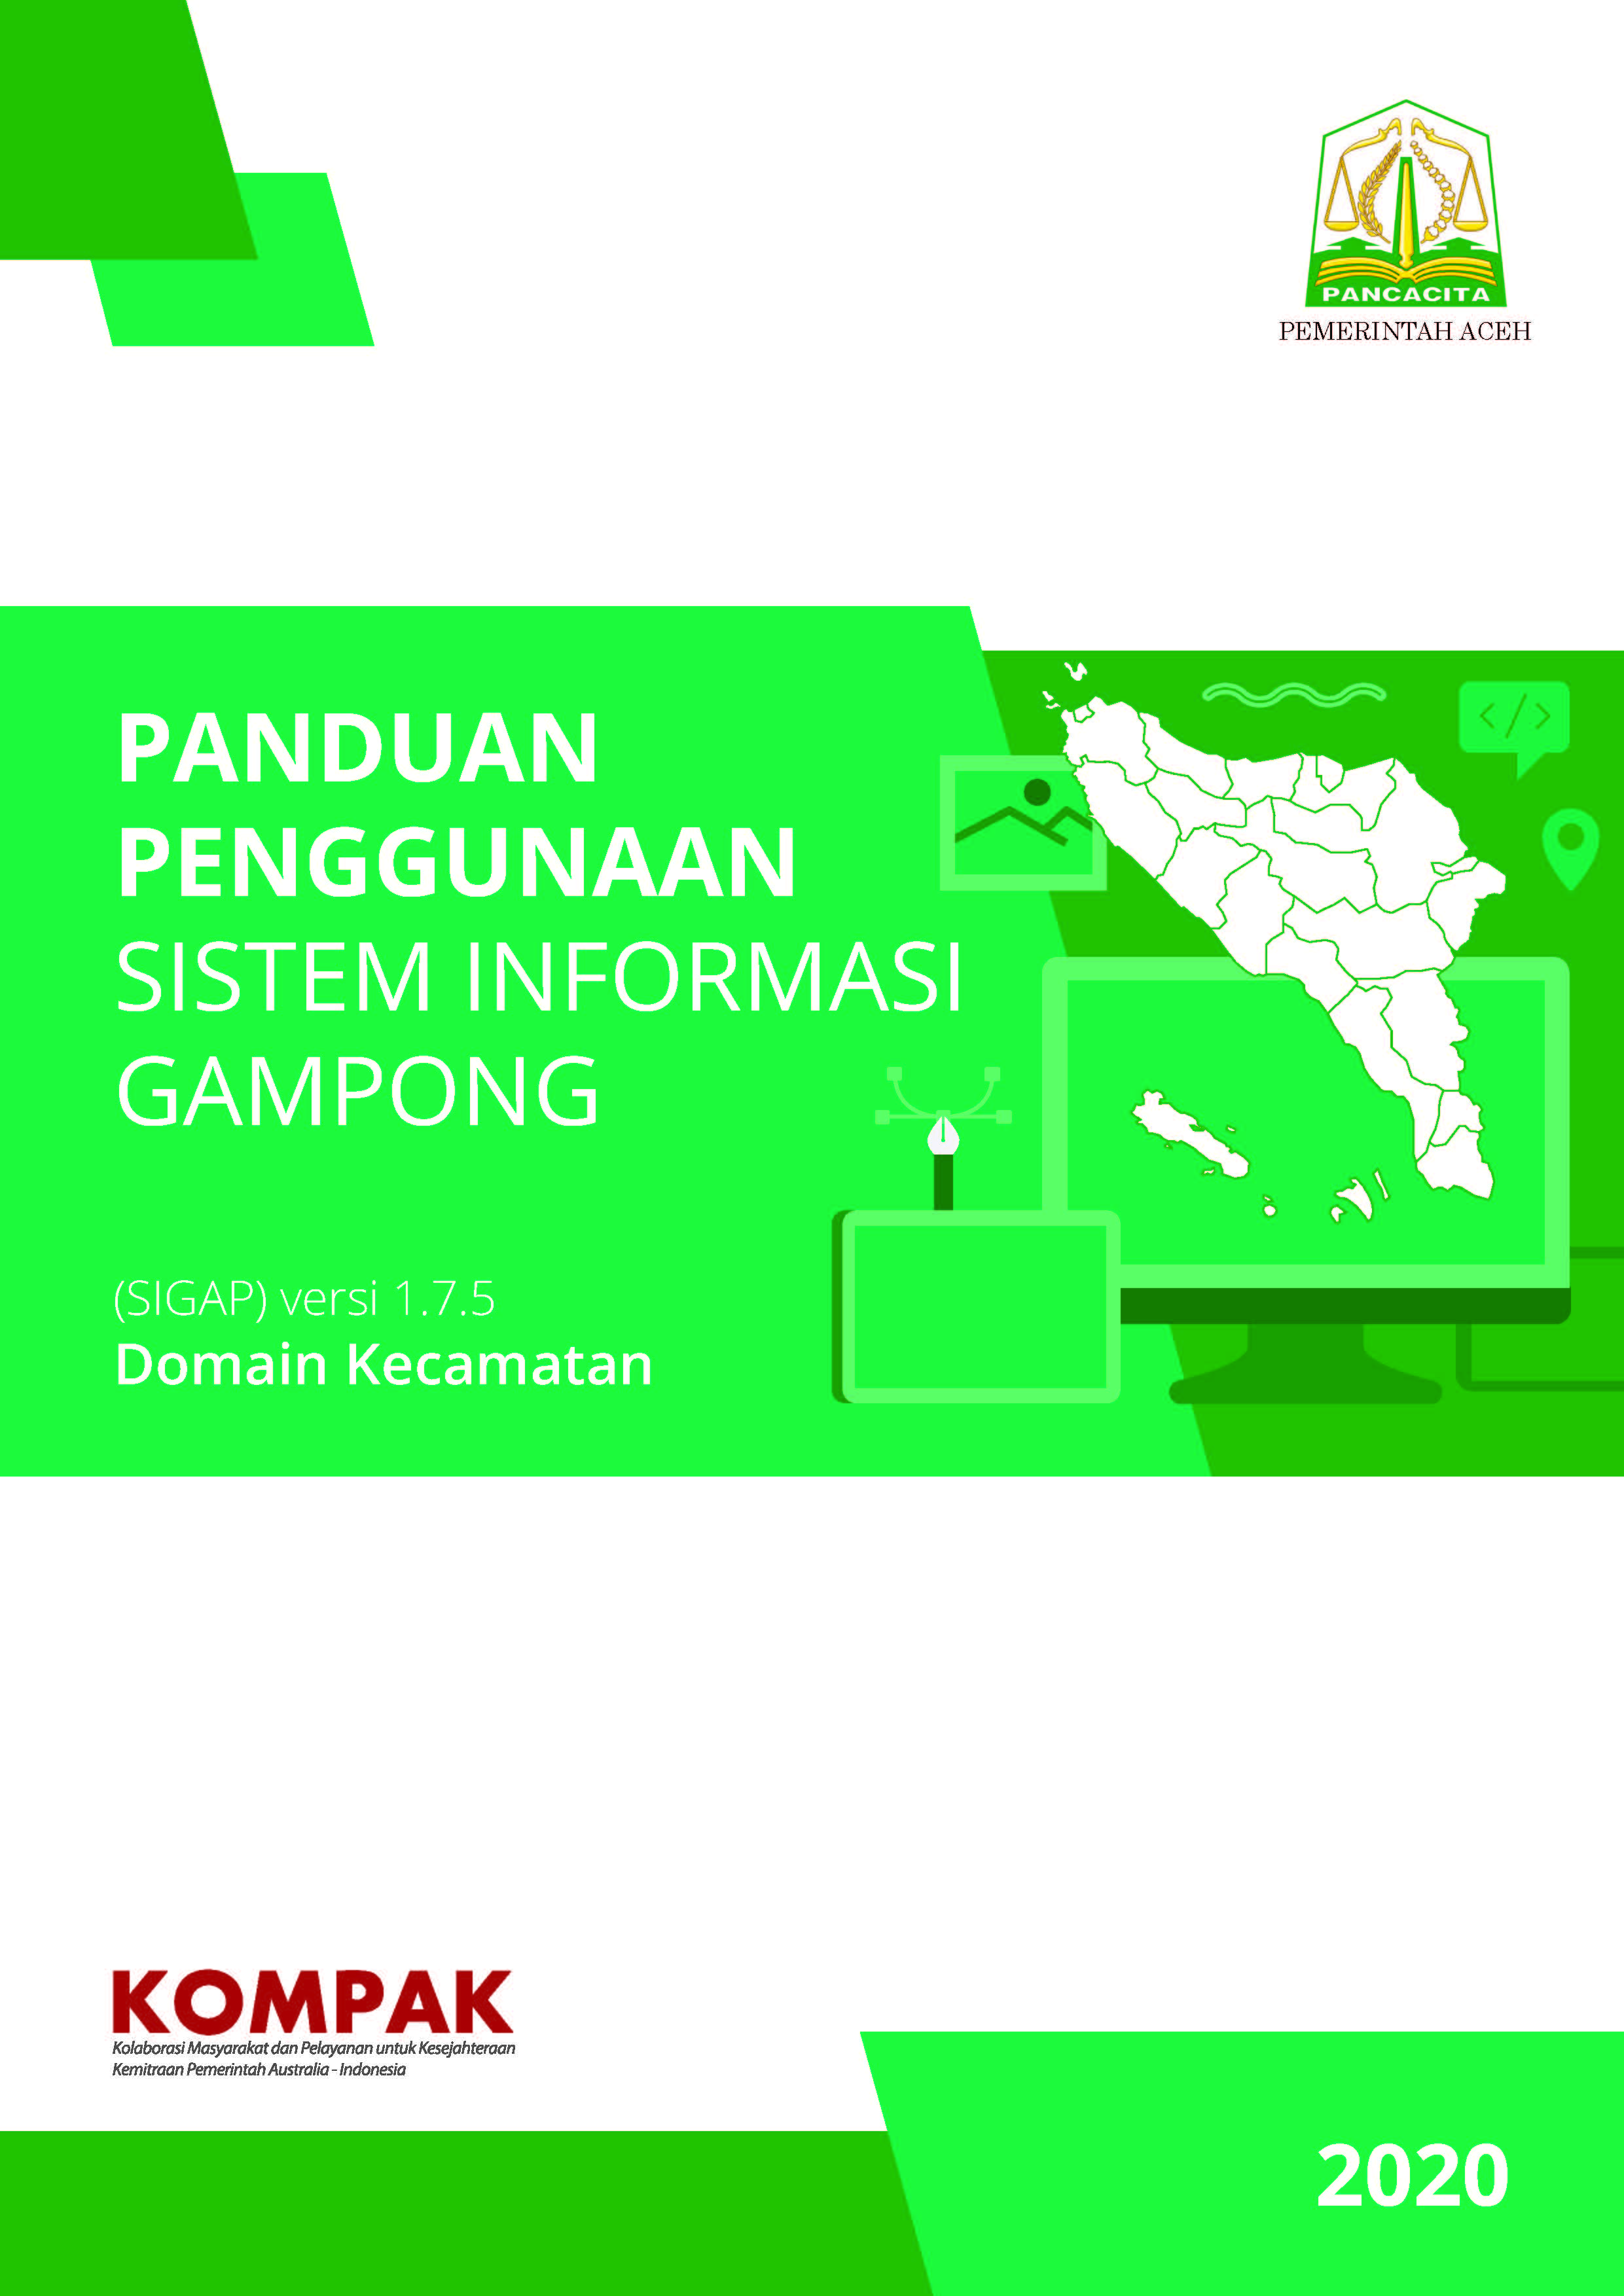 Panduan Penggunaan Sistem Informasi Gampong (SIGAP) Domain Kecamatan